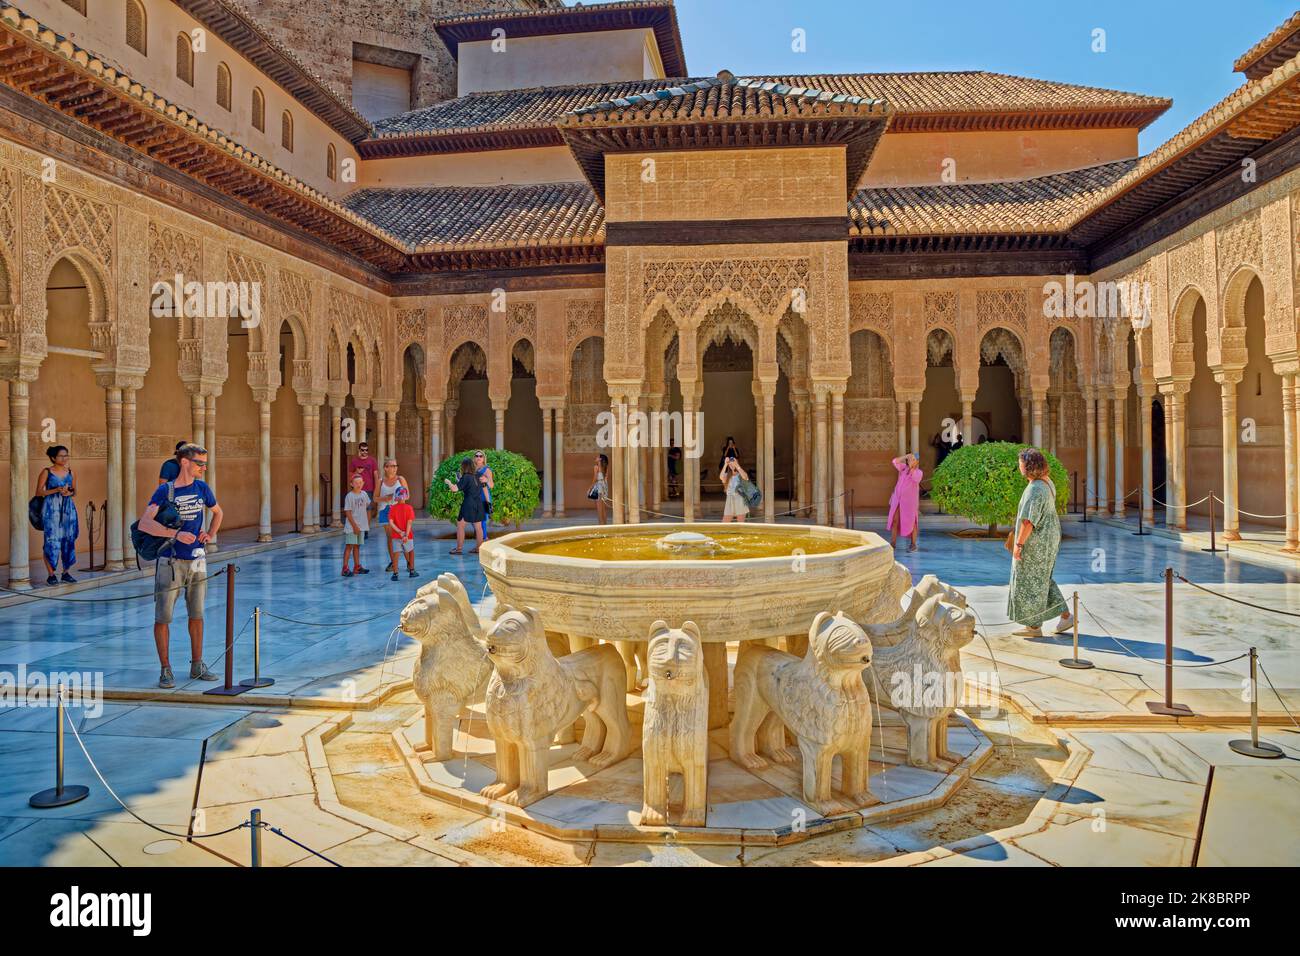 Il Palazzo dei Leoni, uno dei 3 palazzi principali del complesso del Palazzo dell'Alhambra a Granada, Andalusia, Spagna. Foto Stock